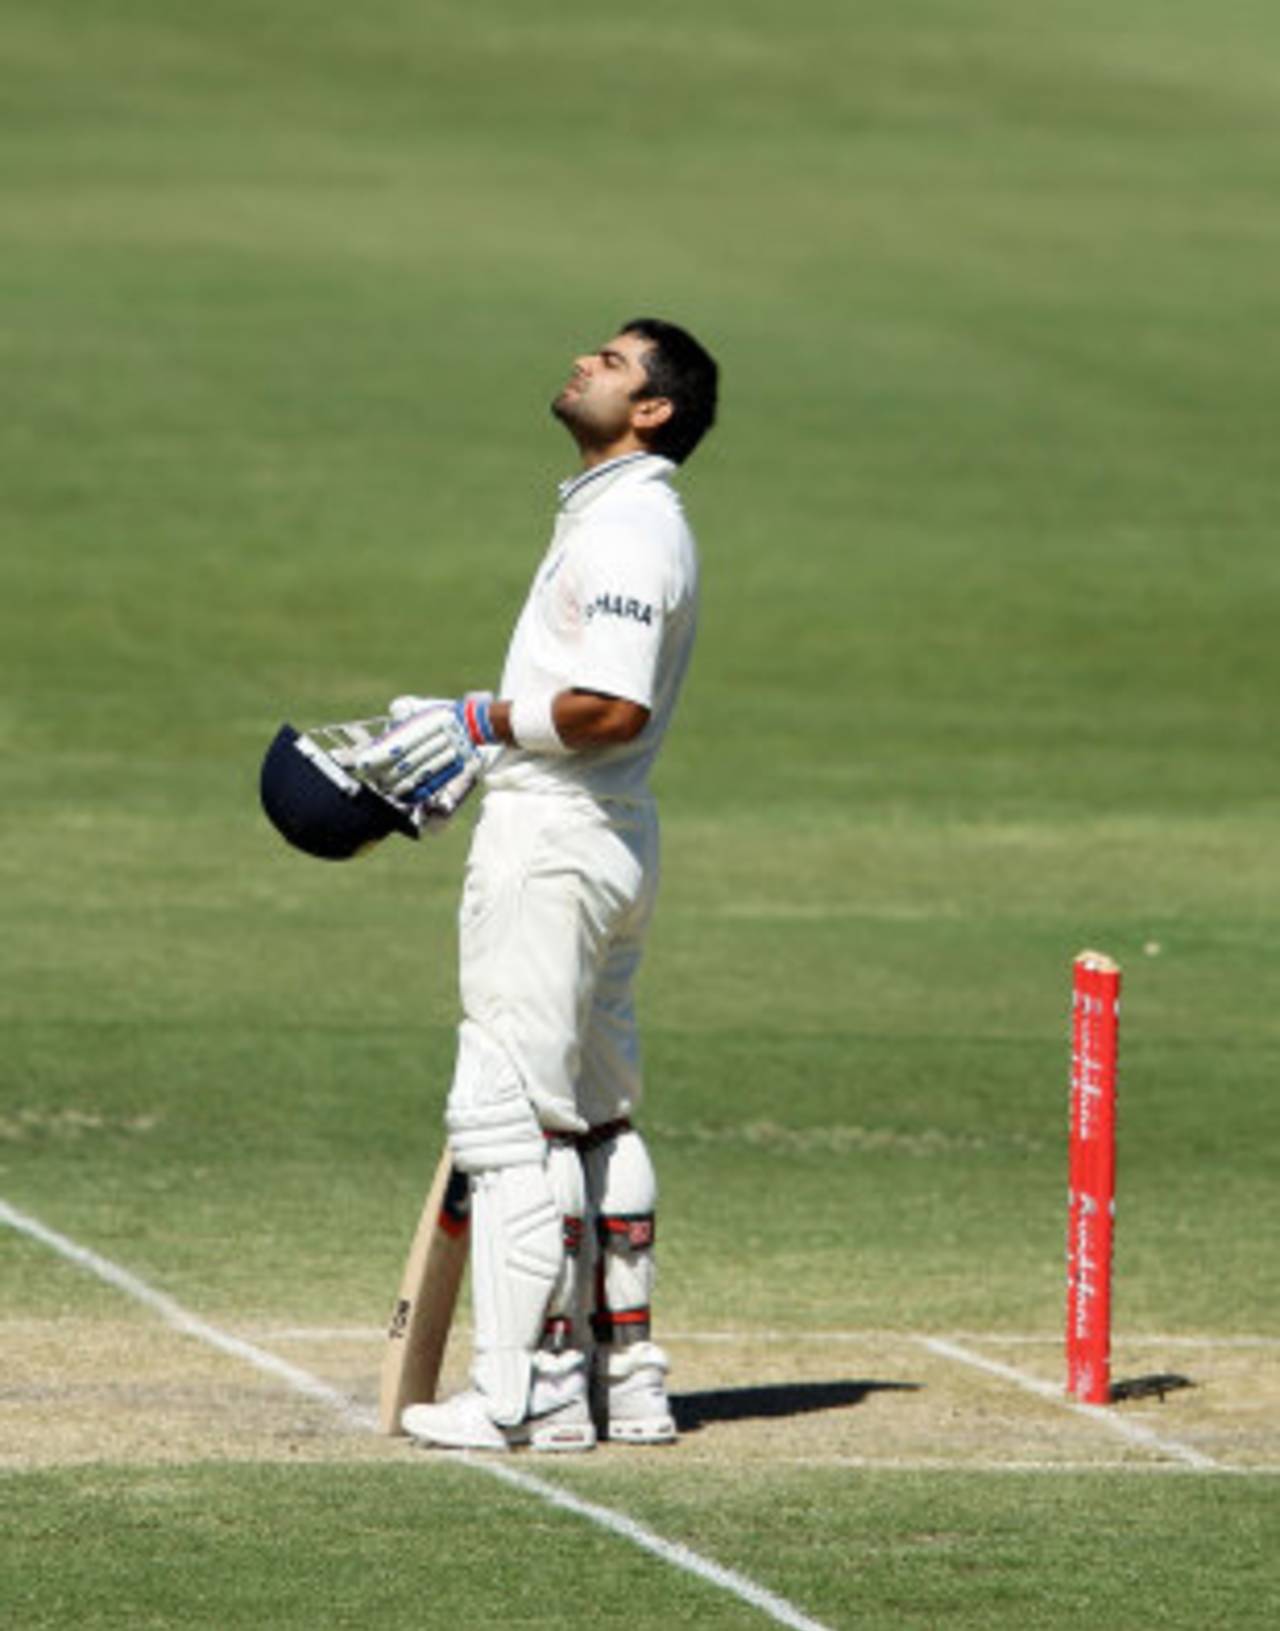 Virat Kohli scored India's first hundred of the series, Australia v India, 4th Test, Adelaide, 3rd day, January 26, 2012